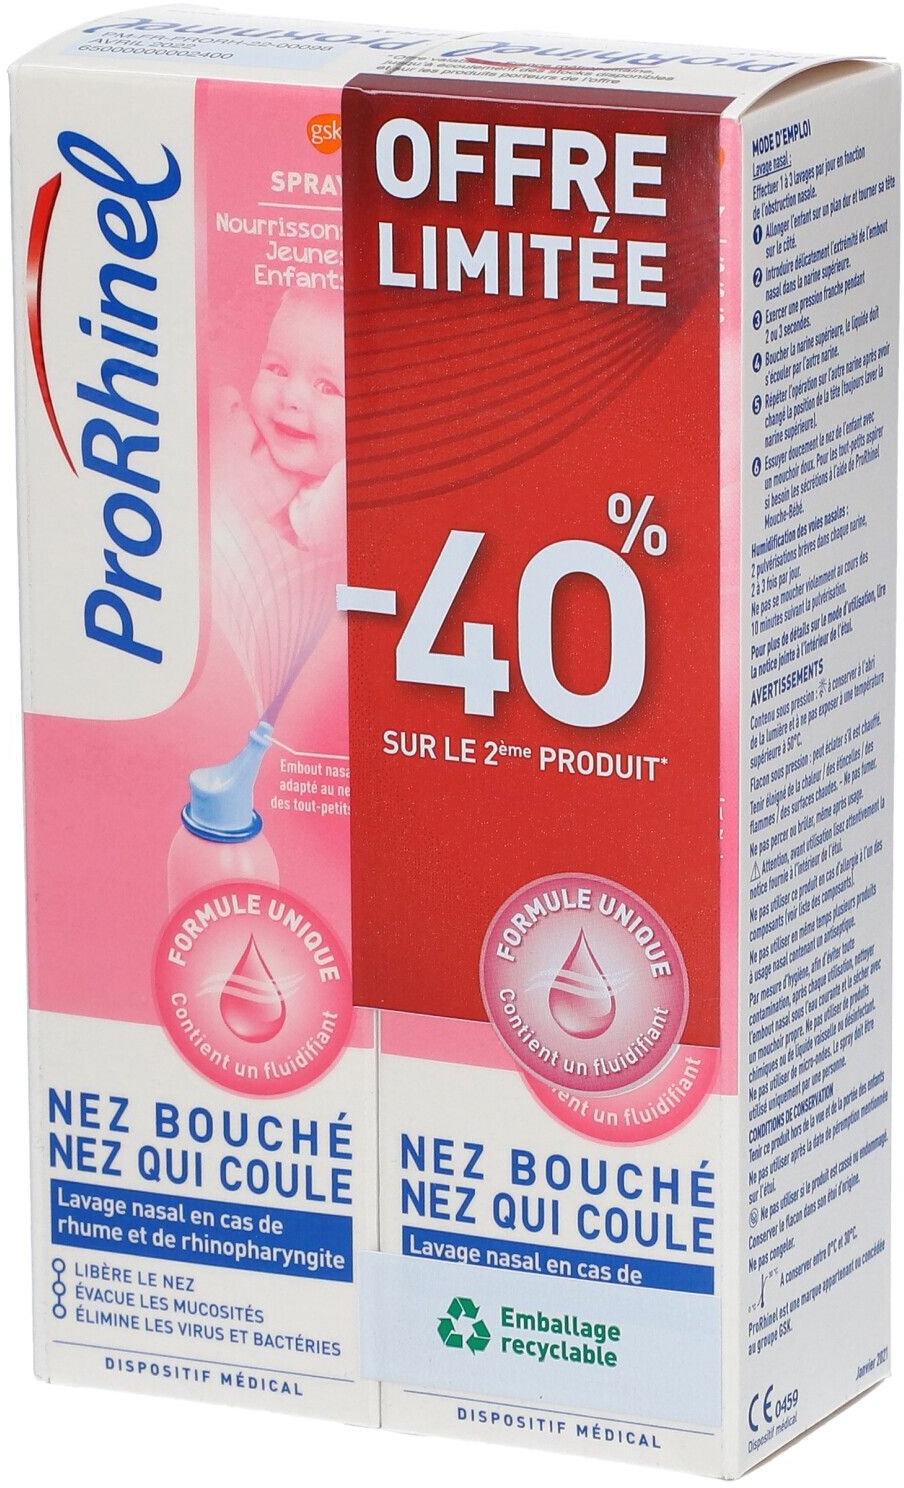 ProRhinel® Spray Nourrissons - Jeunes Enfants 200 ml spray